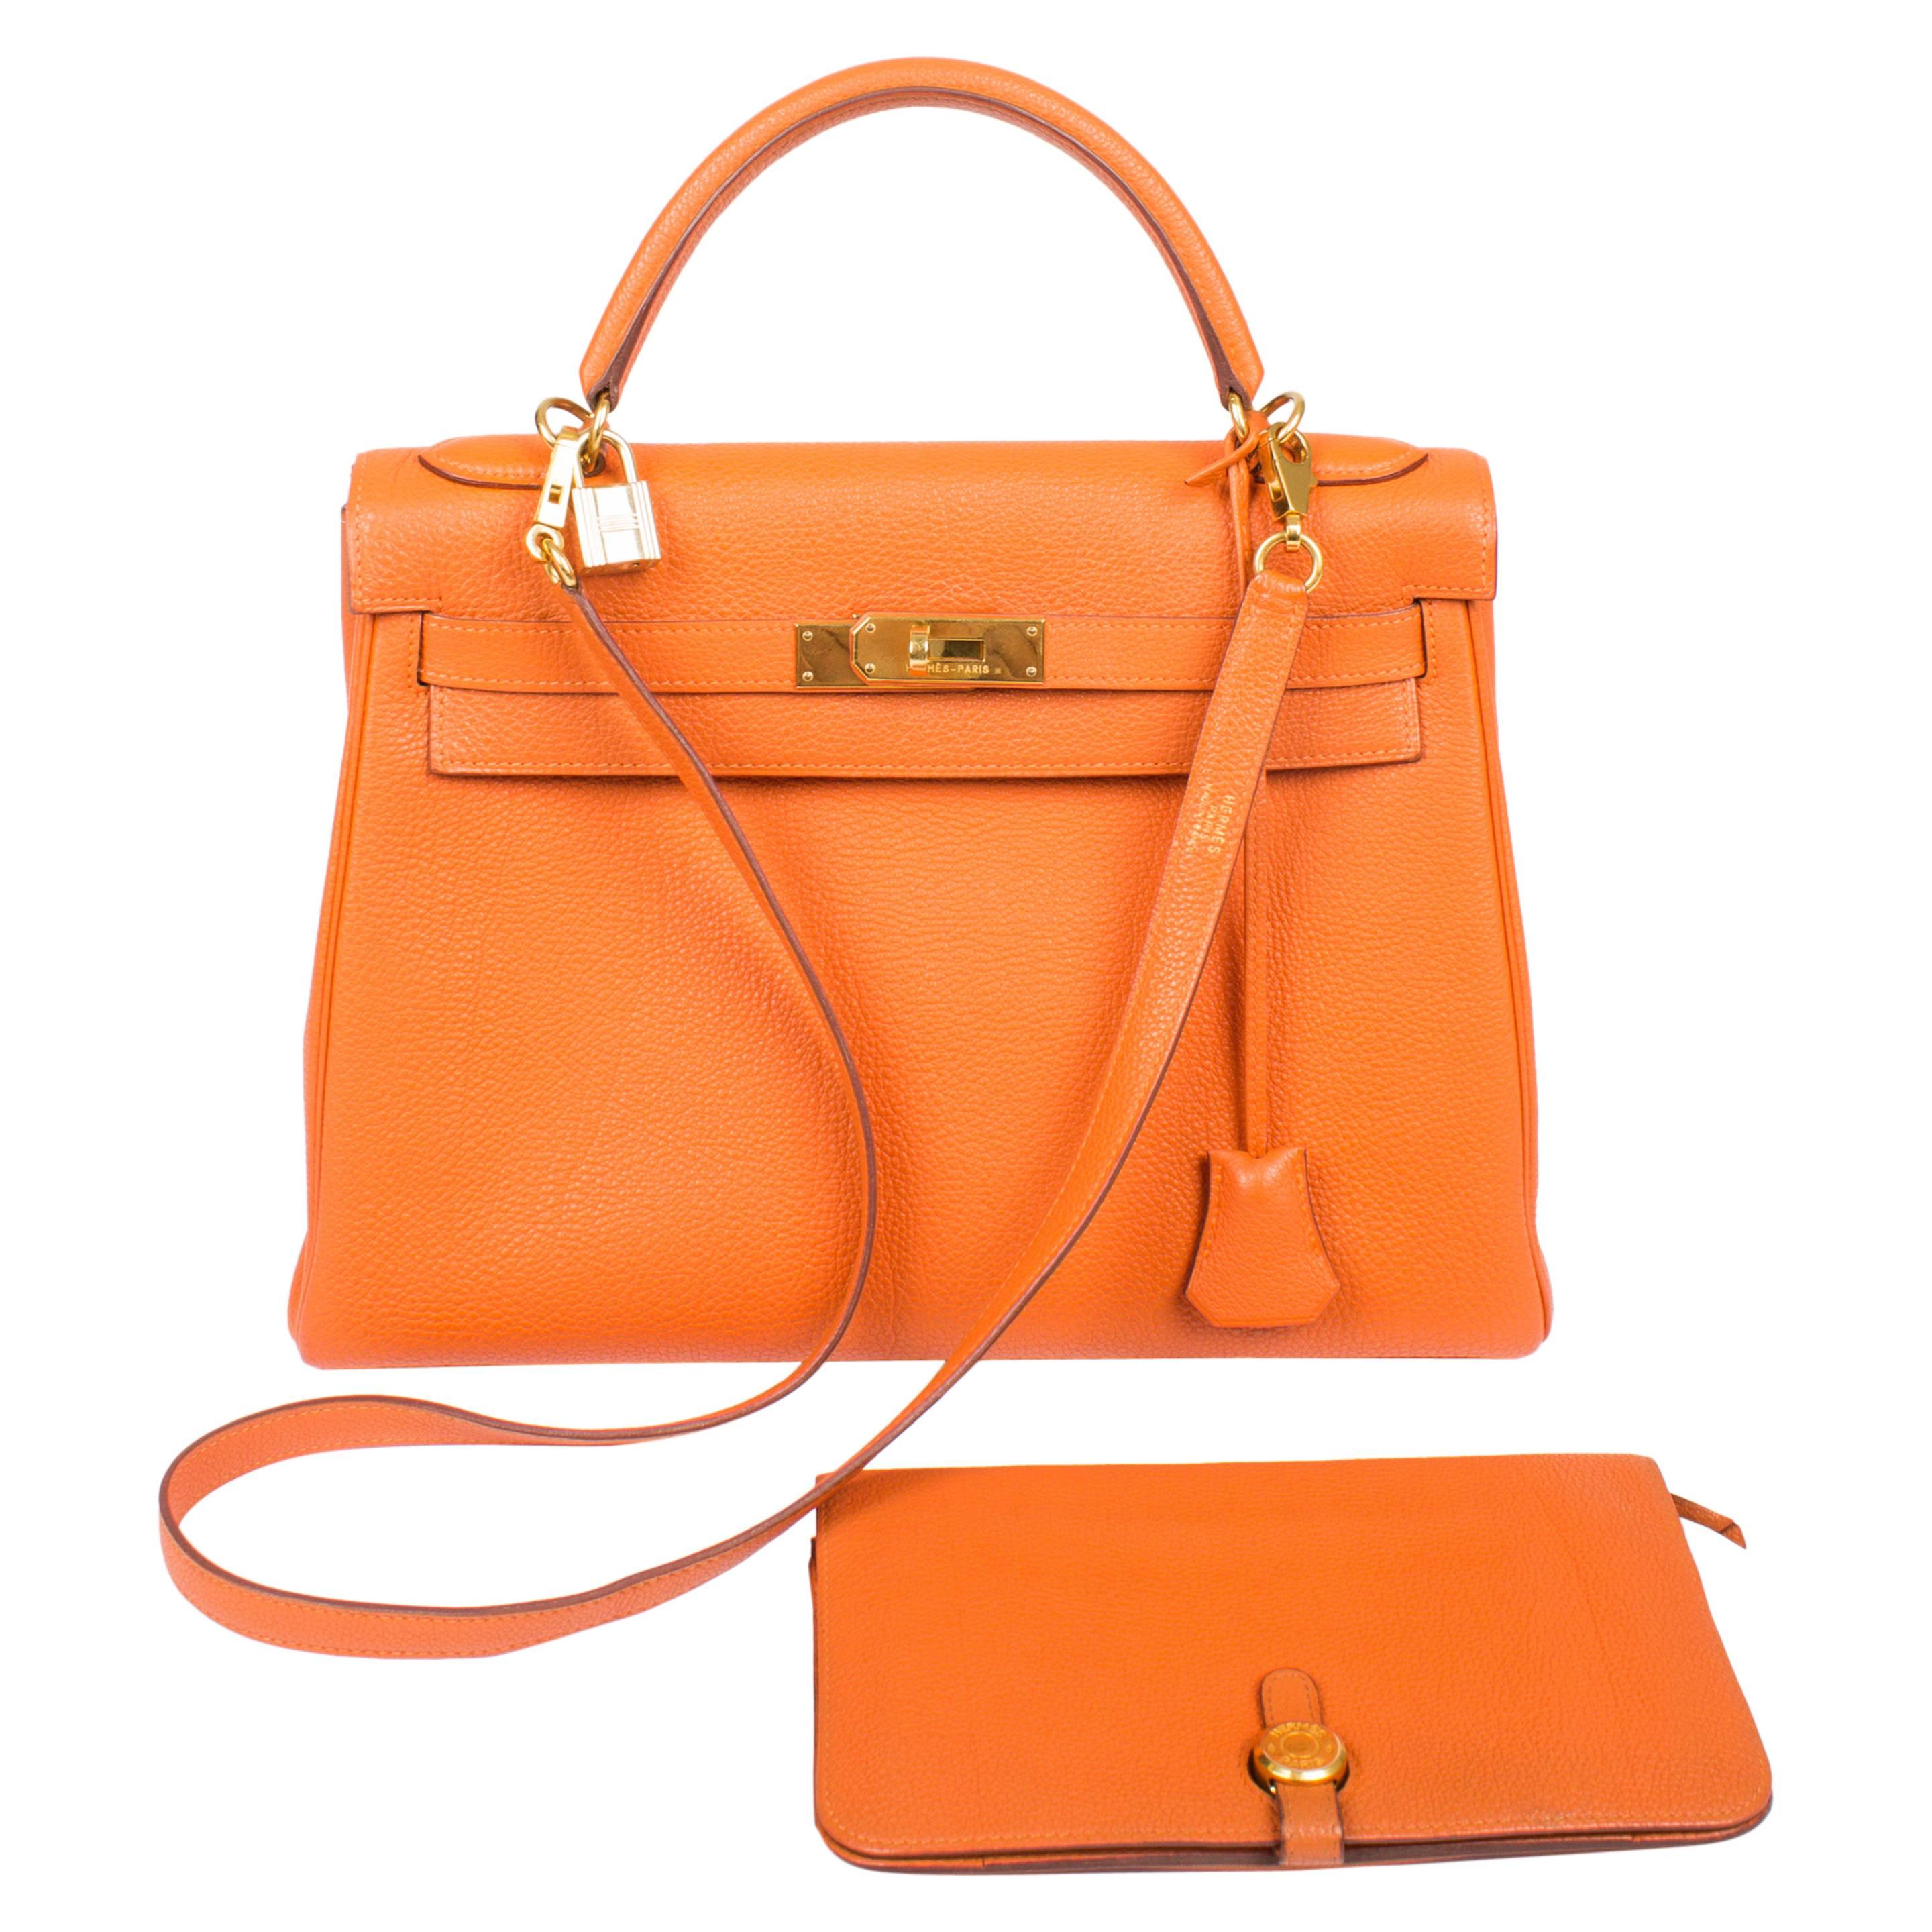 Hermès Kelly Bag 32 Togo Leather - orange H & wallet